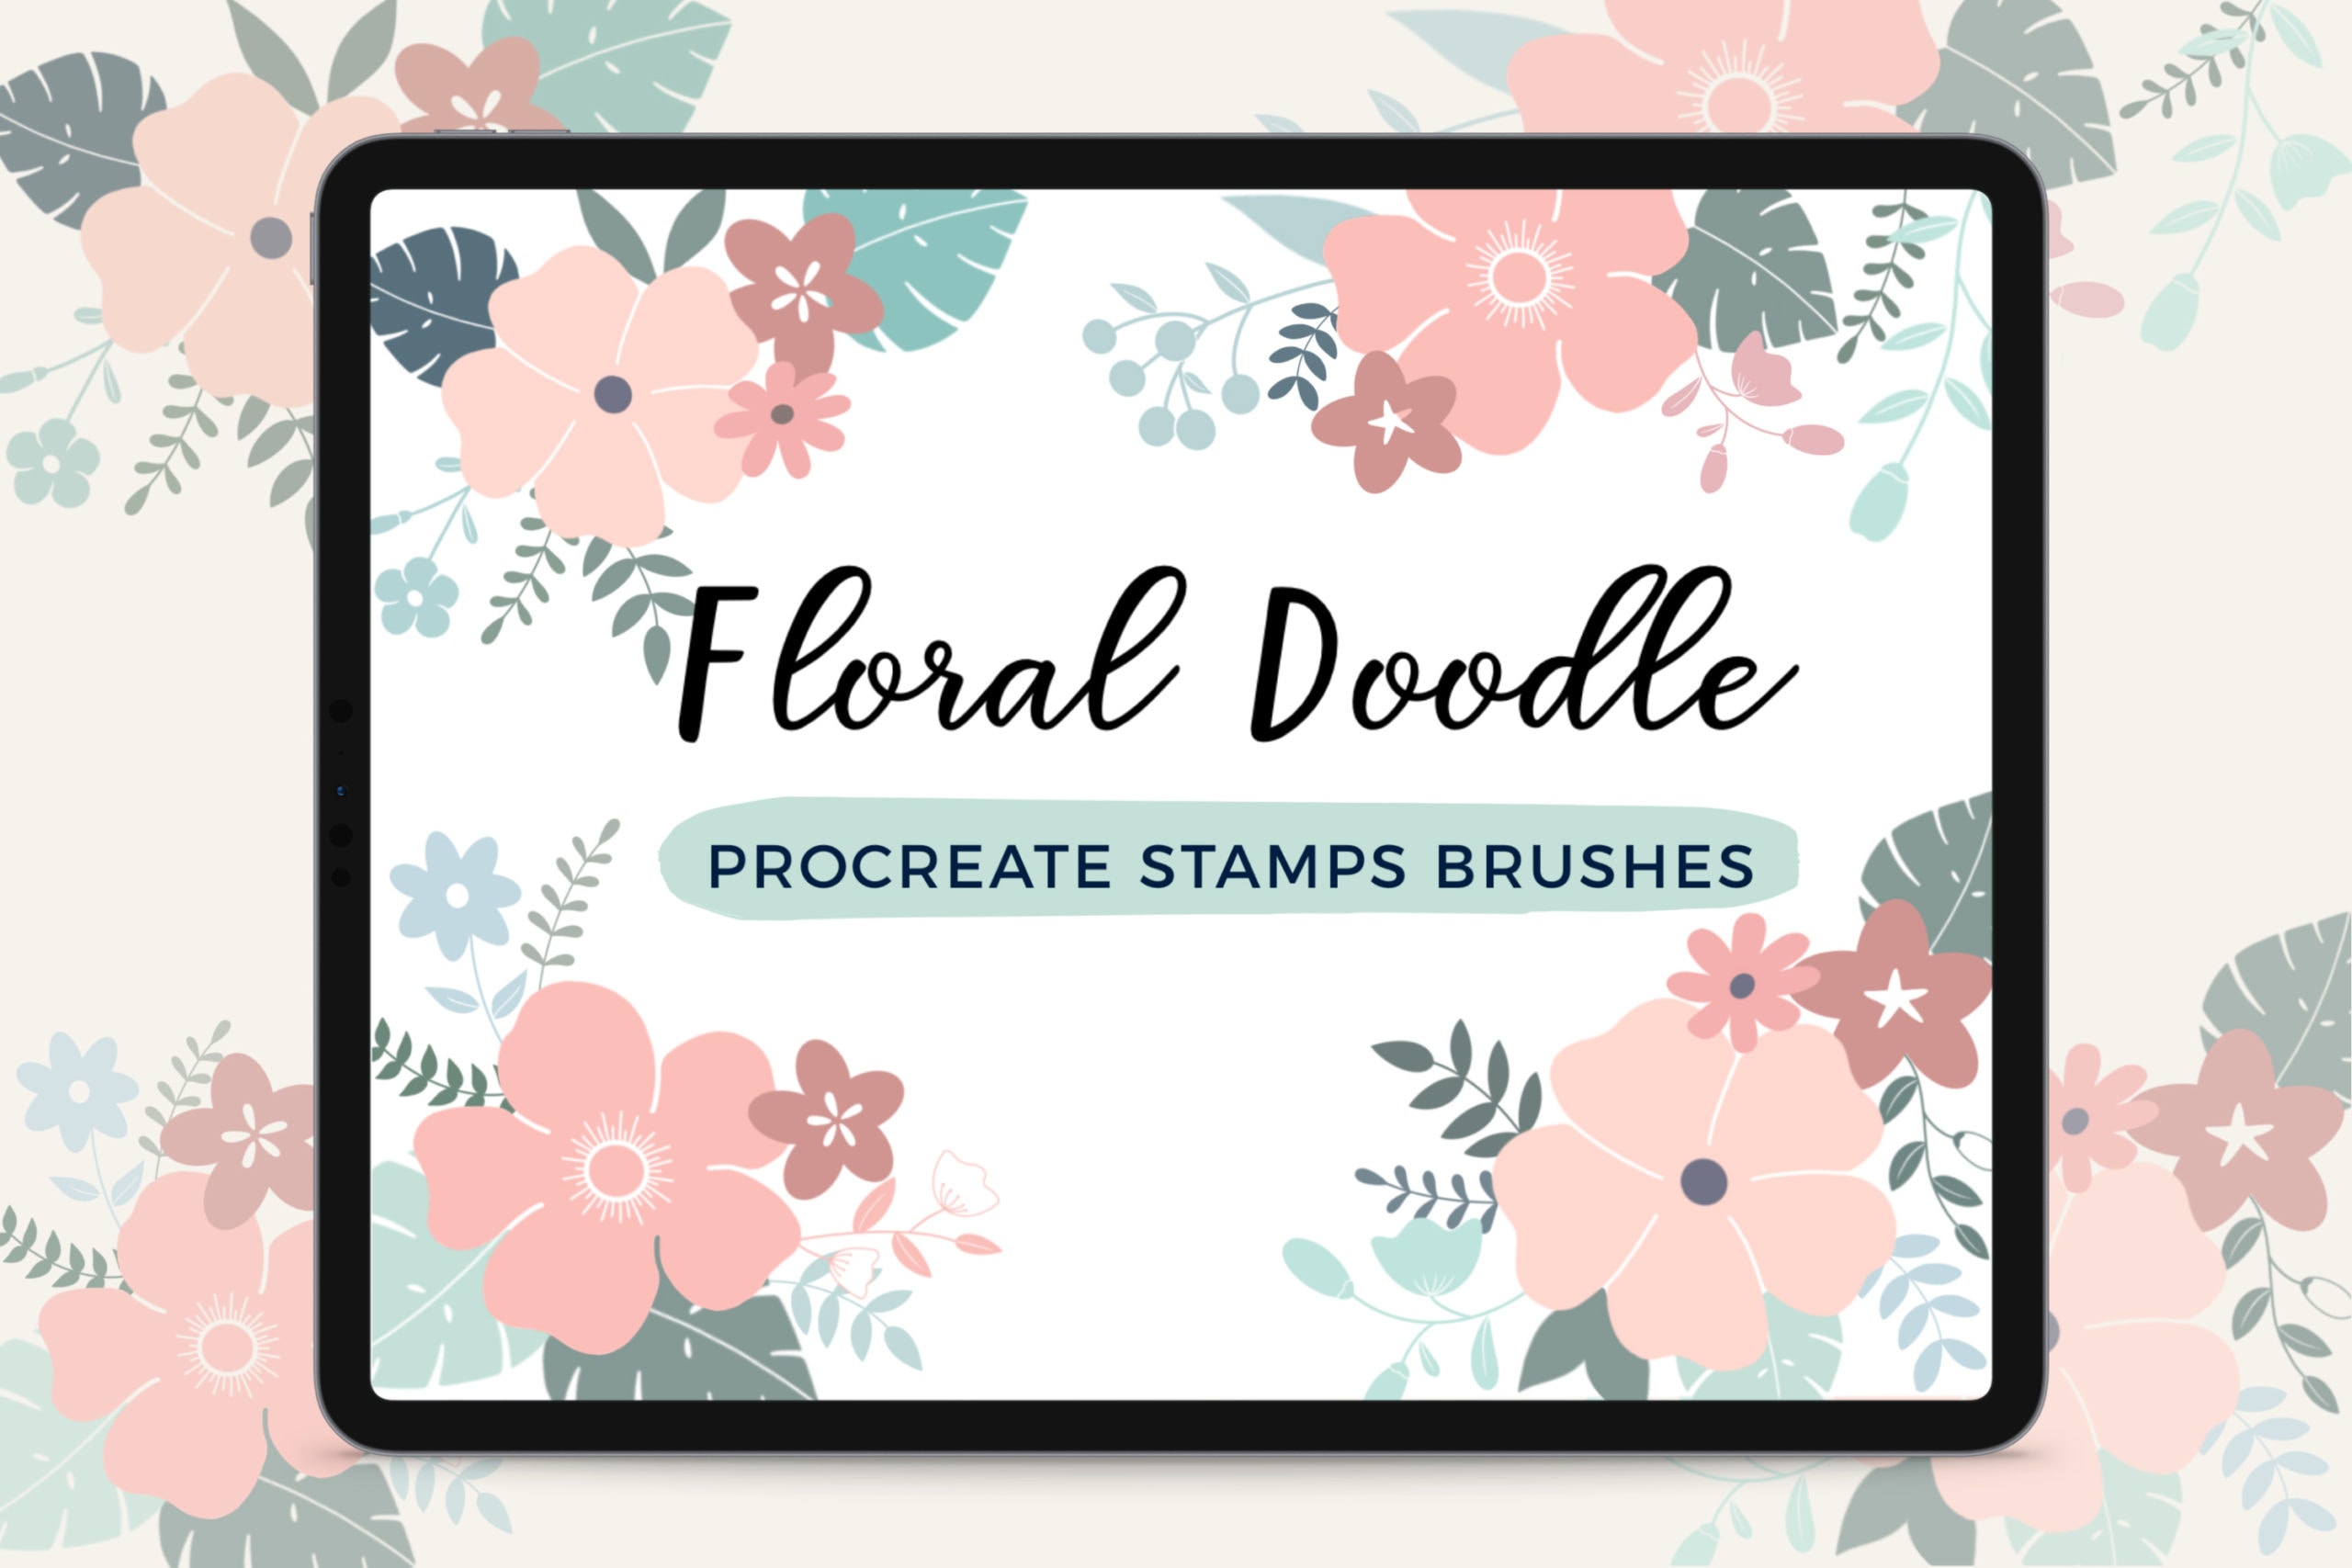 Floral Doodle Stamps